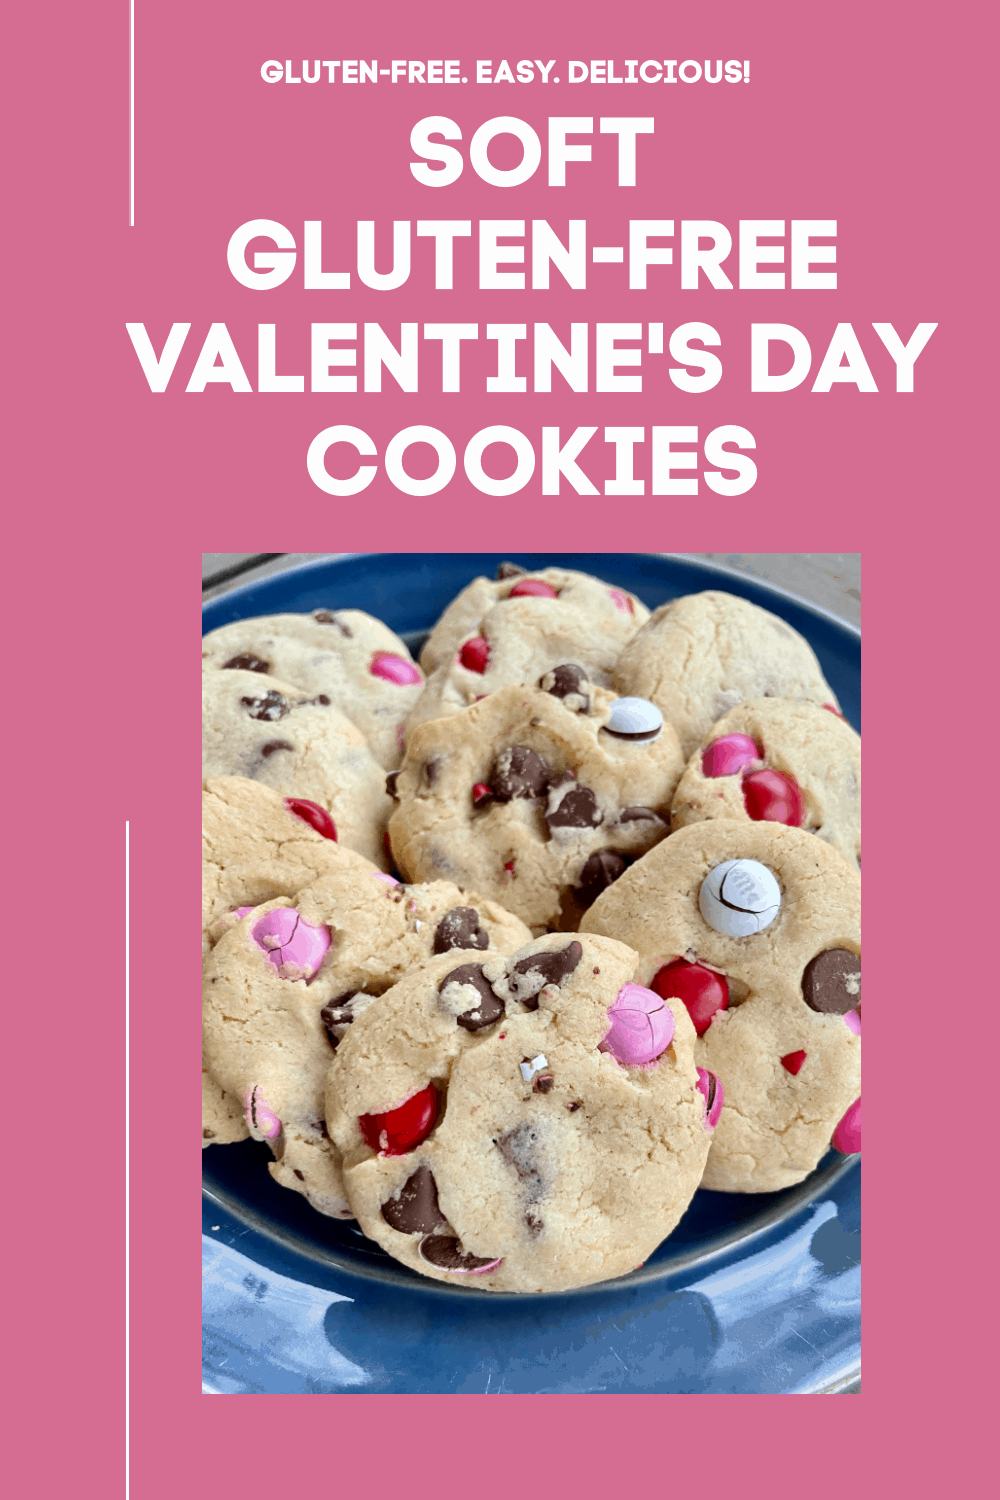 Soft Gluten-Free Valentine's Day Cookies